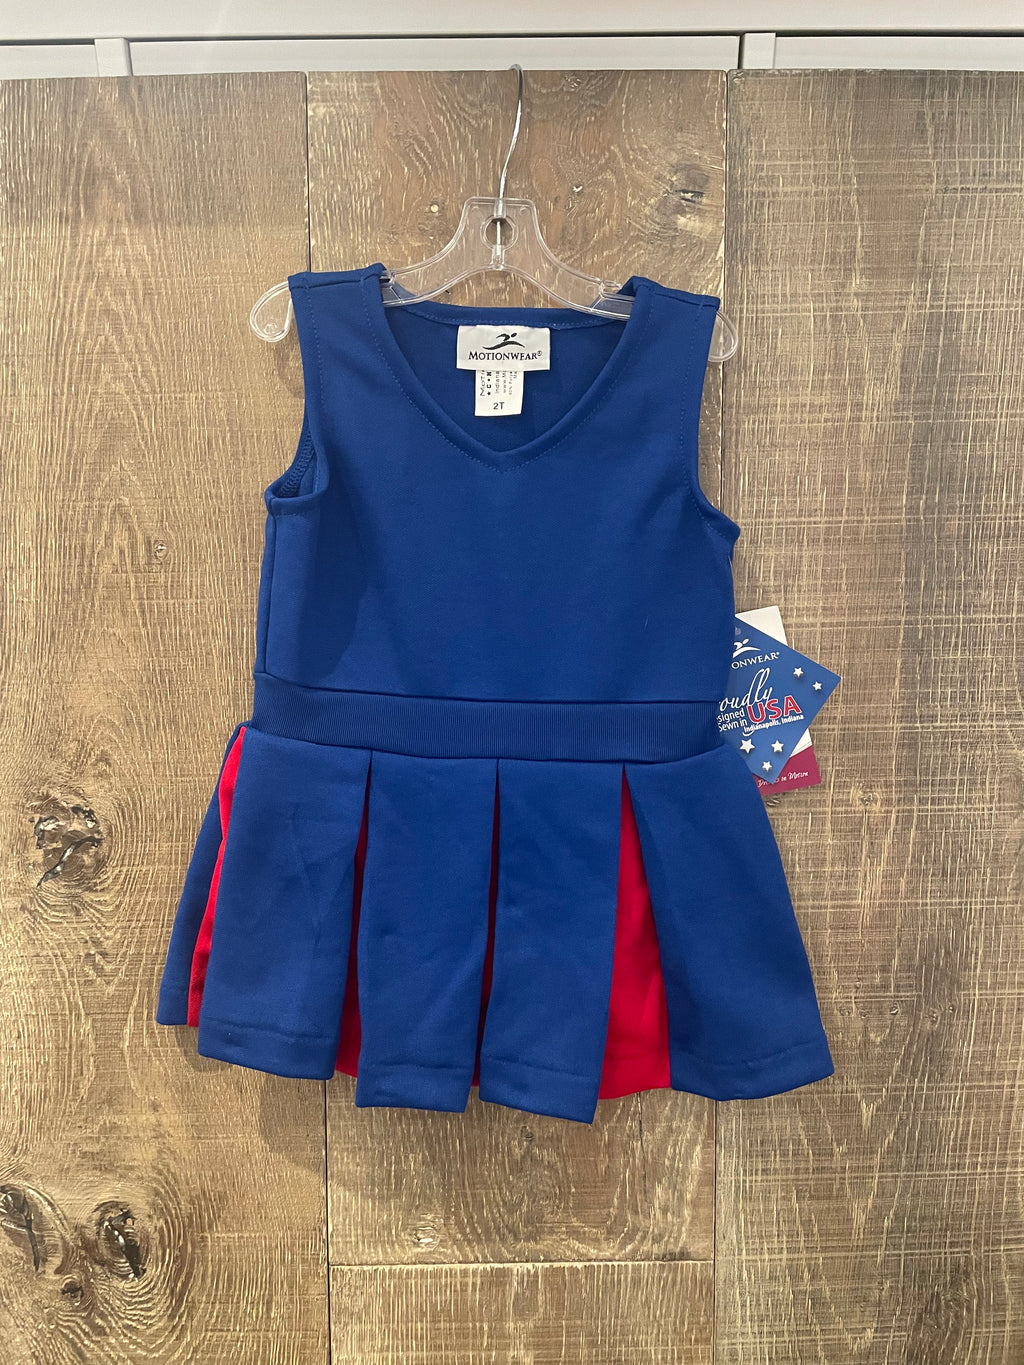 Cheerleader Uniform - Blue & Red